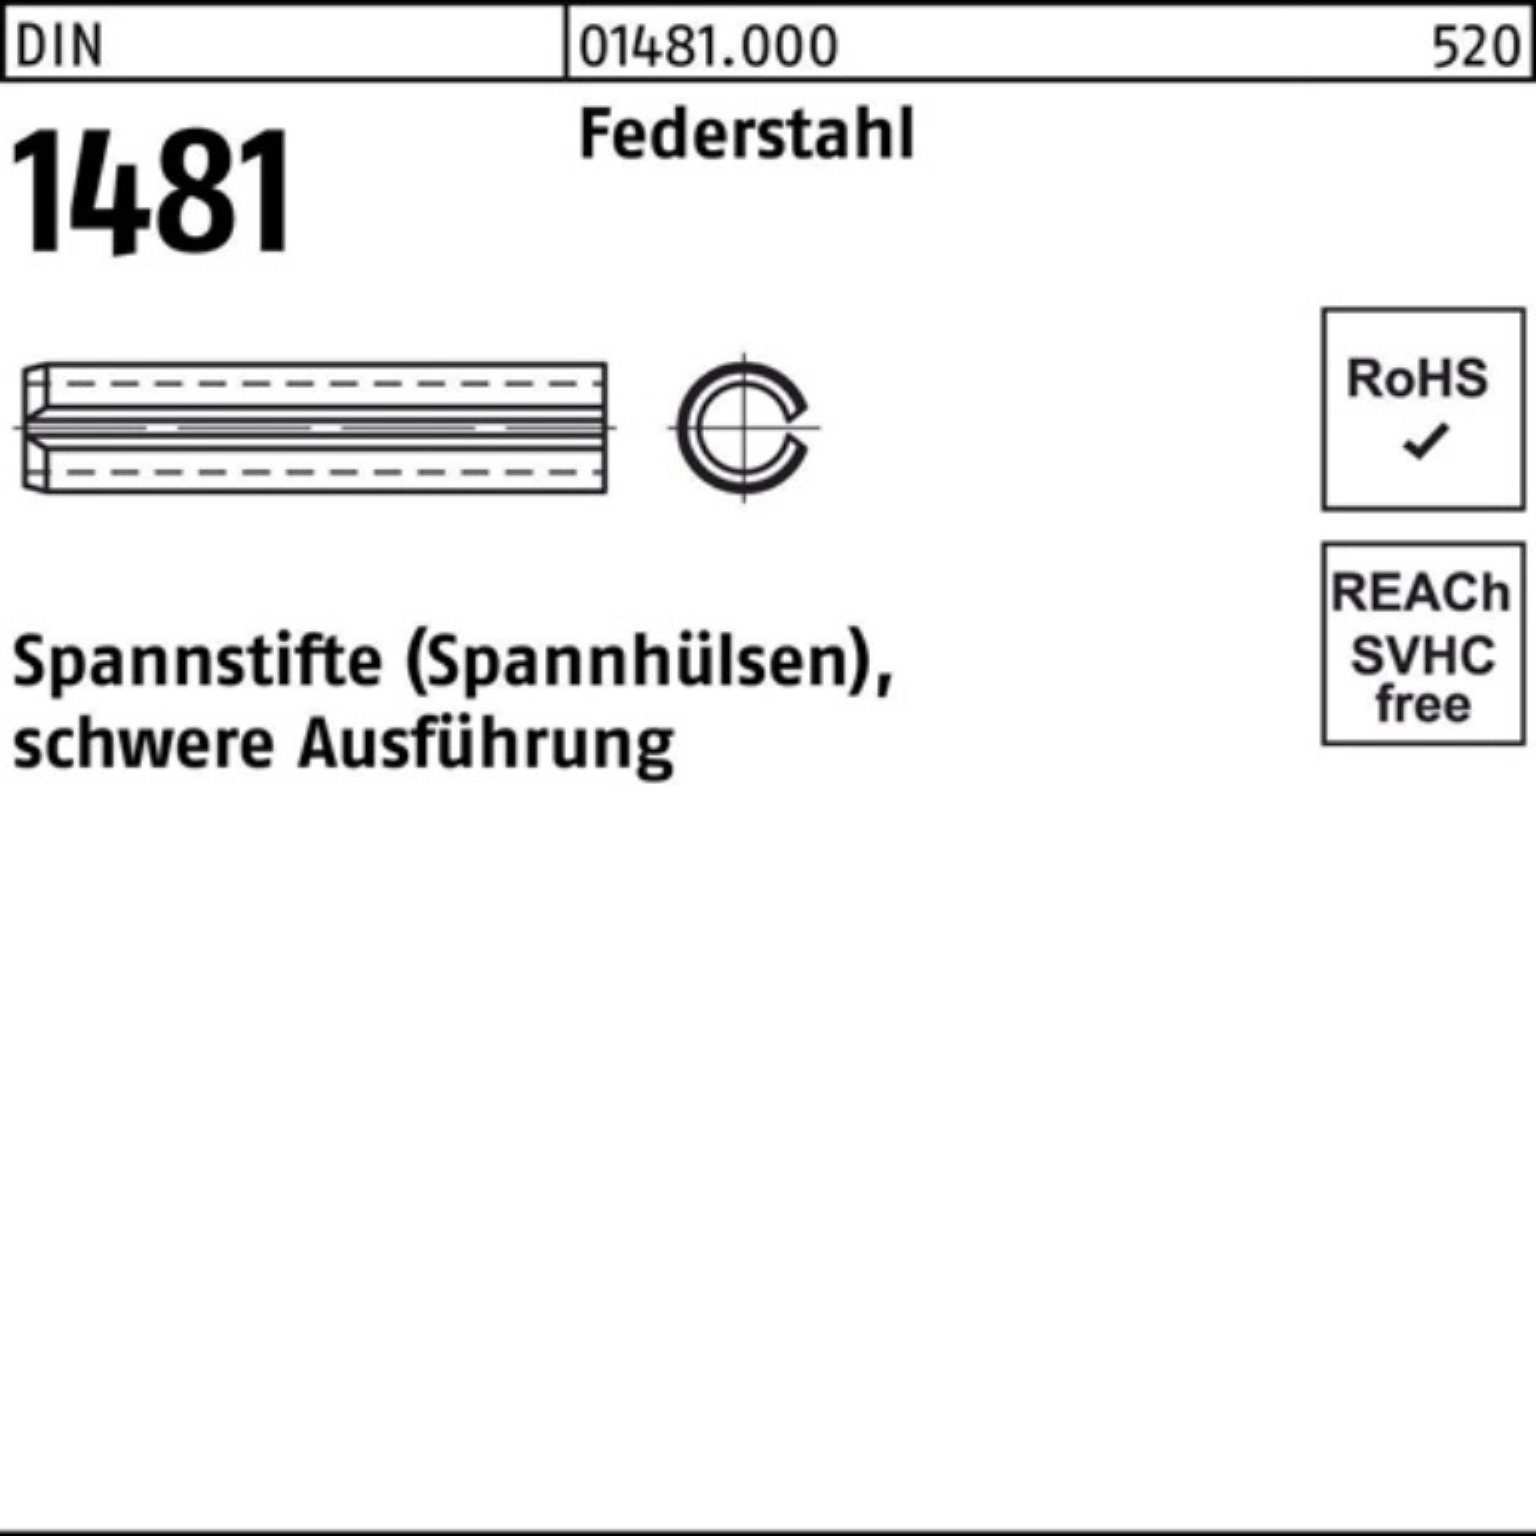 Spannstift Spannstift 35x Ausführung Reyher 100er Federstahl schwere 1481 50 DIN 1 Pack